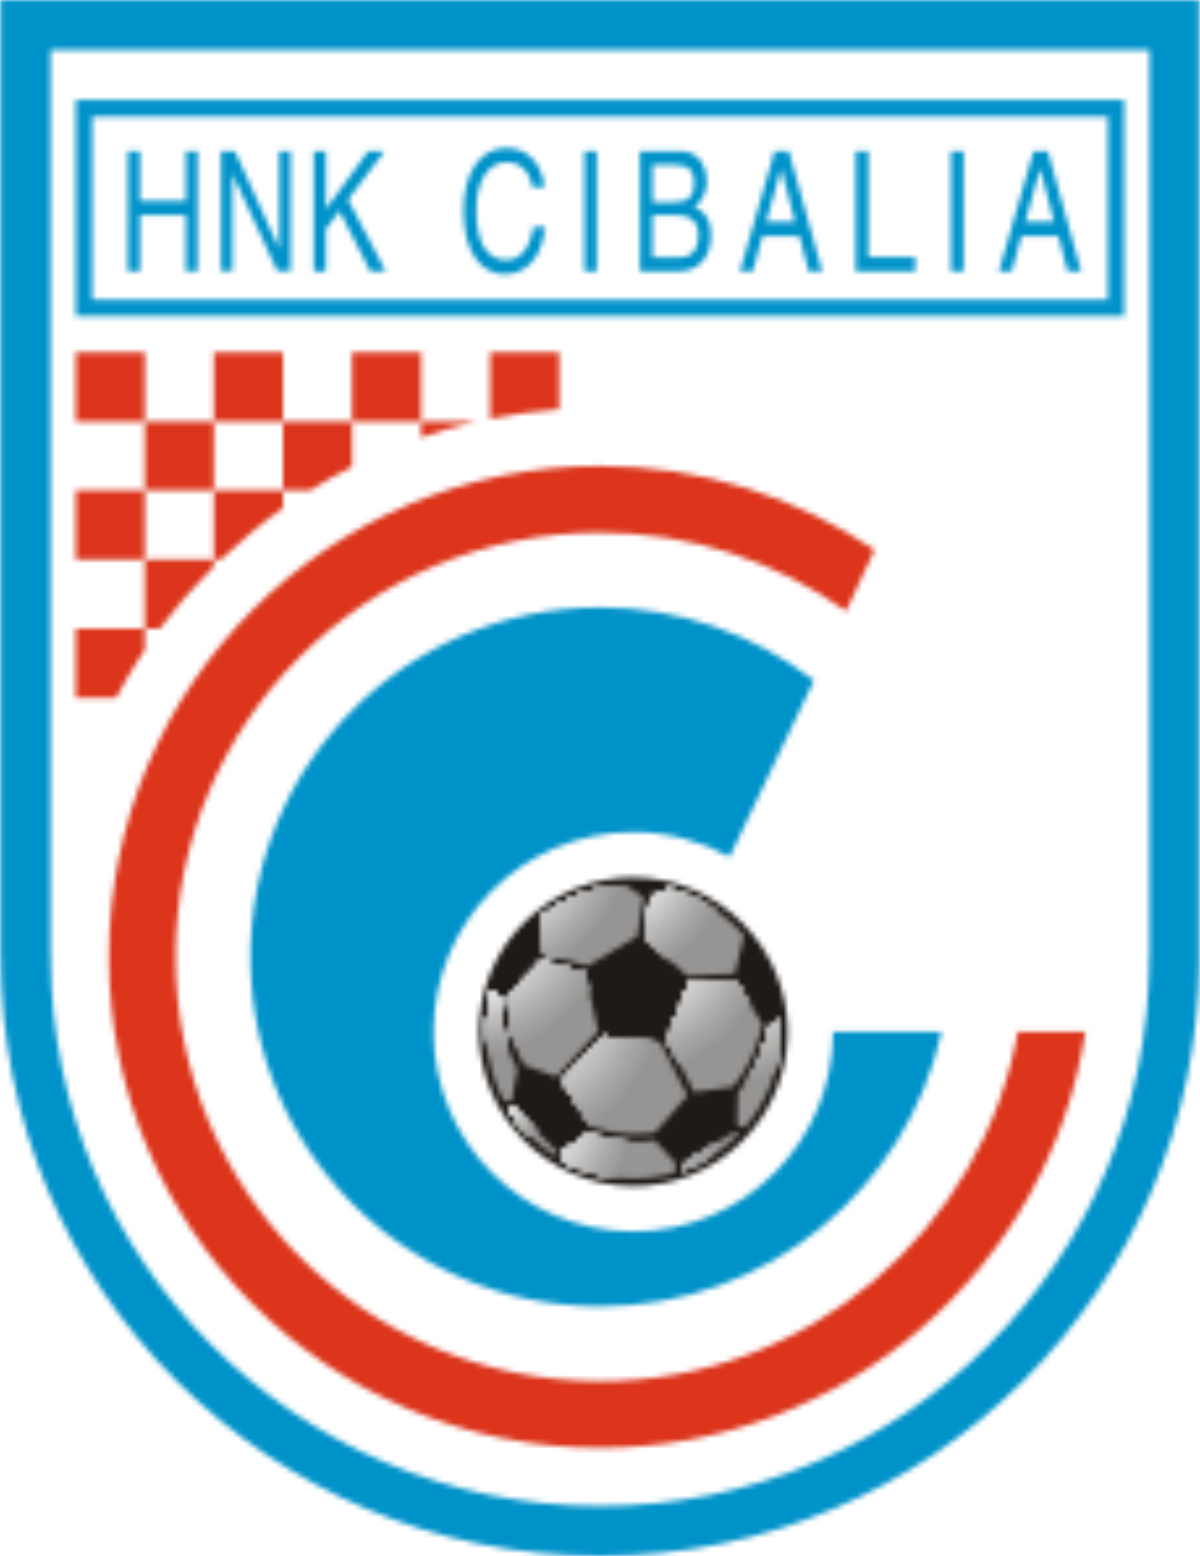 施巴利亚 logo